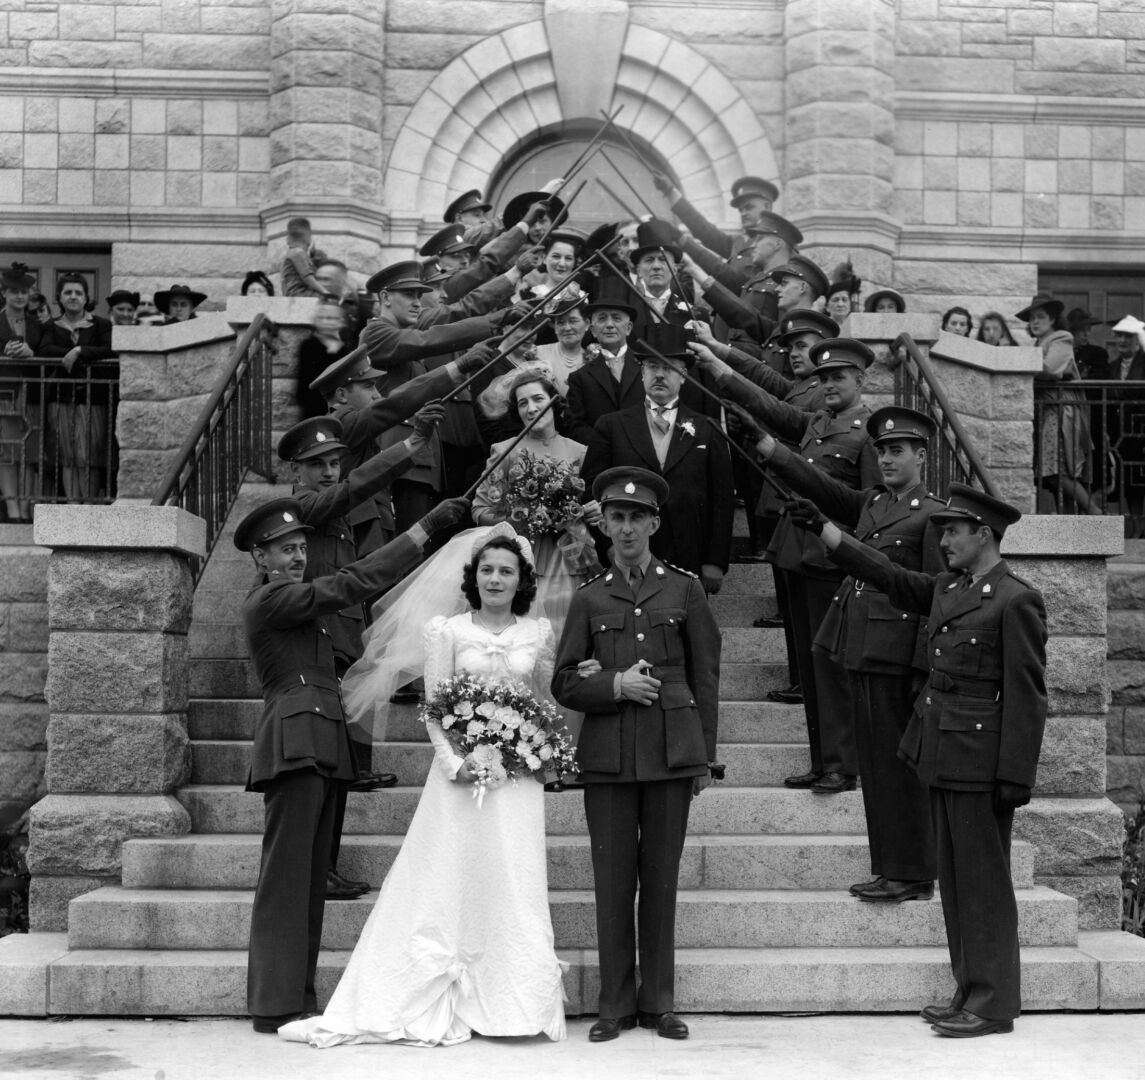 Mariage de Marcel Gosselin et Christine Bouchard en 1941.  Photo Collection Centre d’histoire de Saint-Hyacinthe, CH085, B.J. Hébert